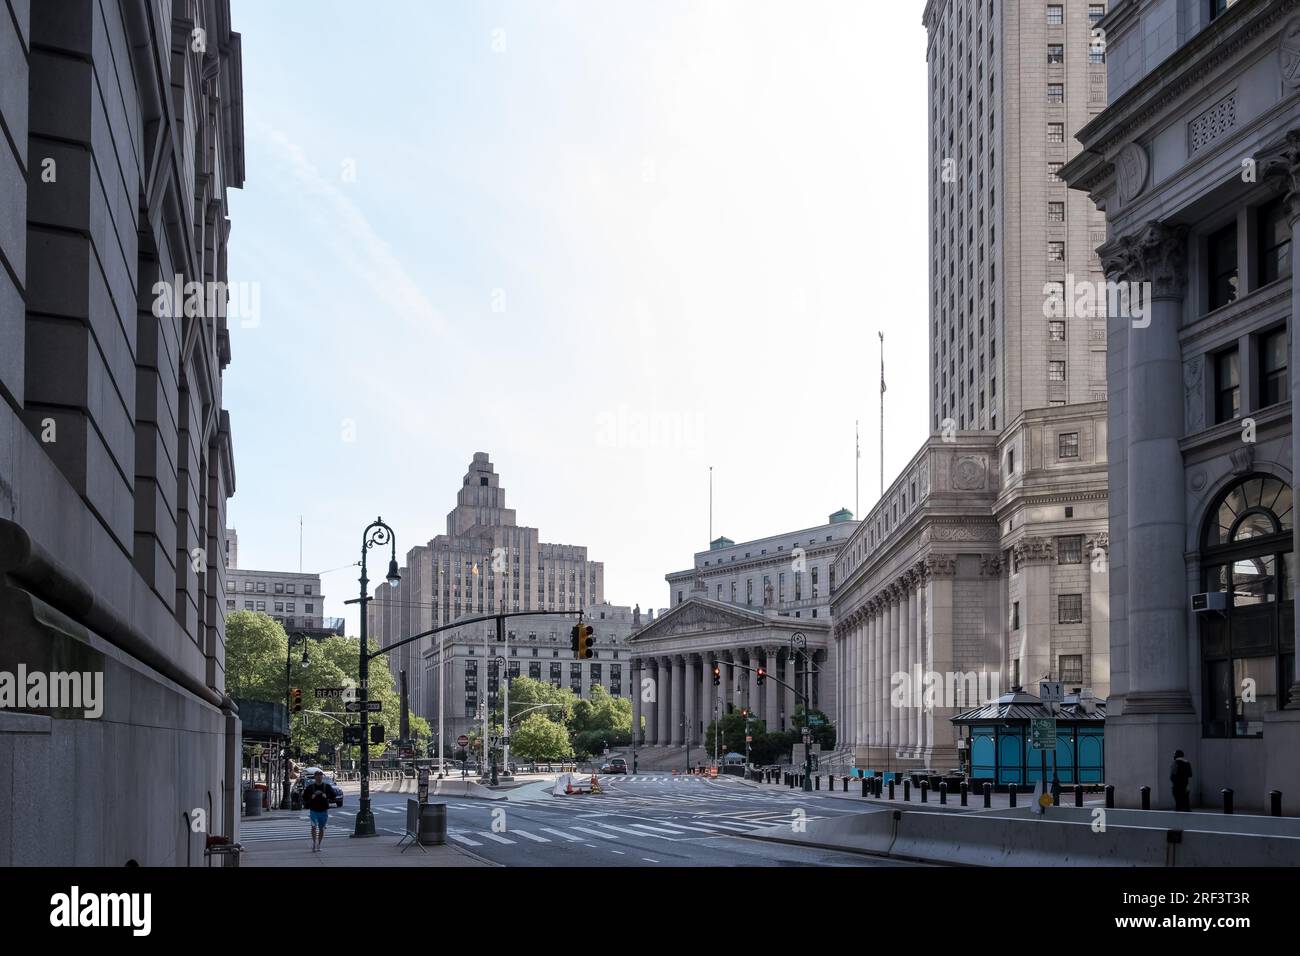 Vue sur Foley Square, une intersection de rues dans le Civic Center de Lower Manhattan, New York City, avec Thomas Paine Park Banque D'Images